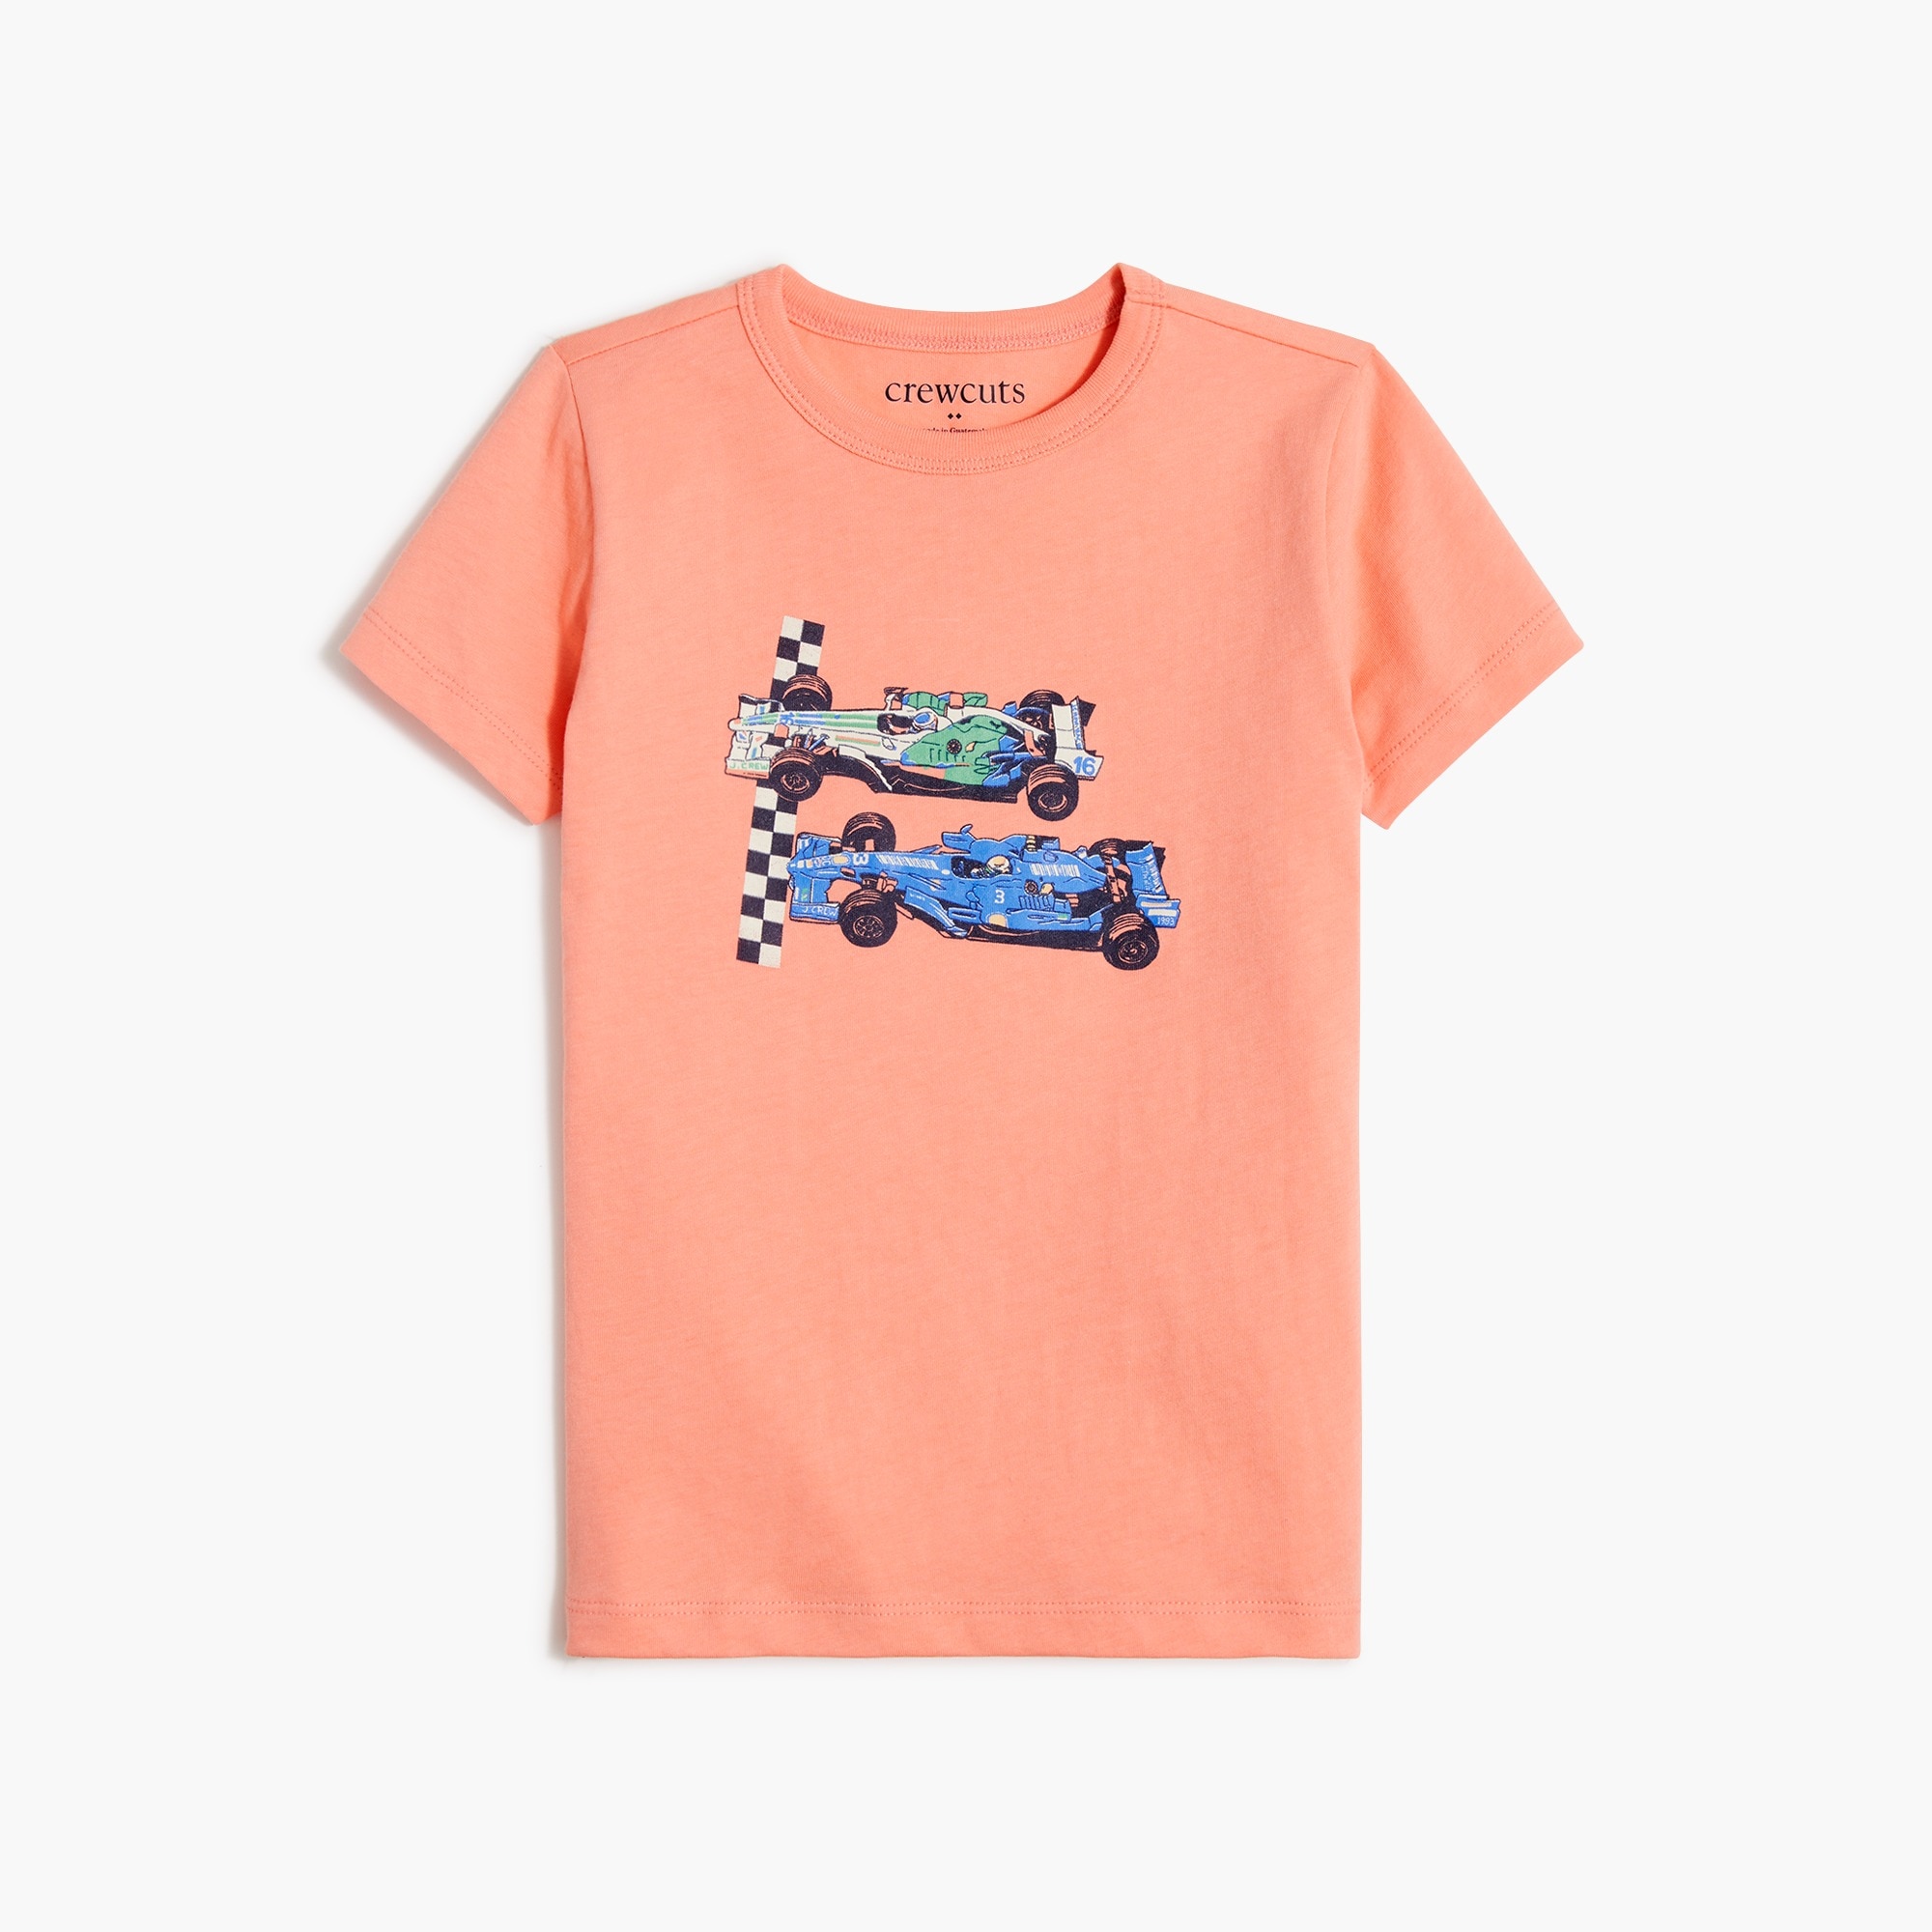 Boys' race car graphic tee